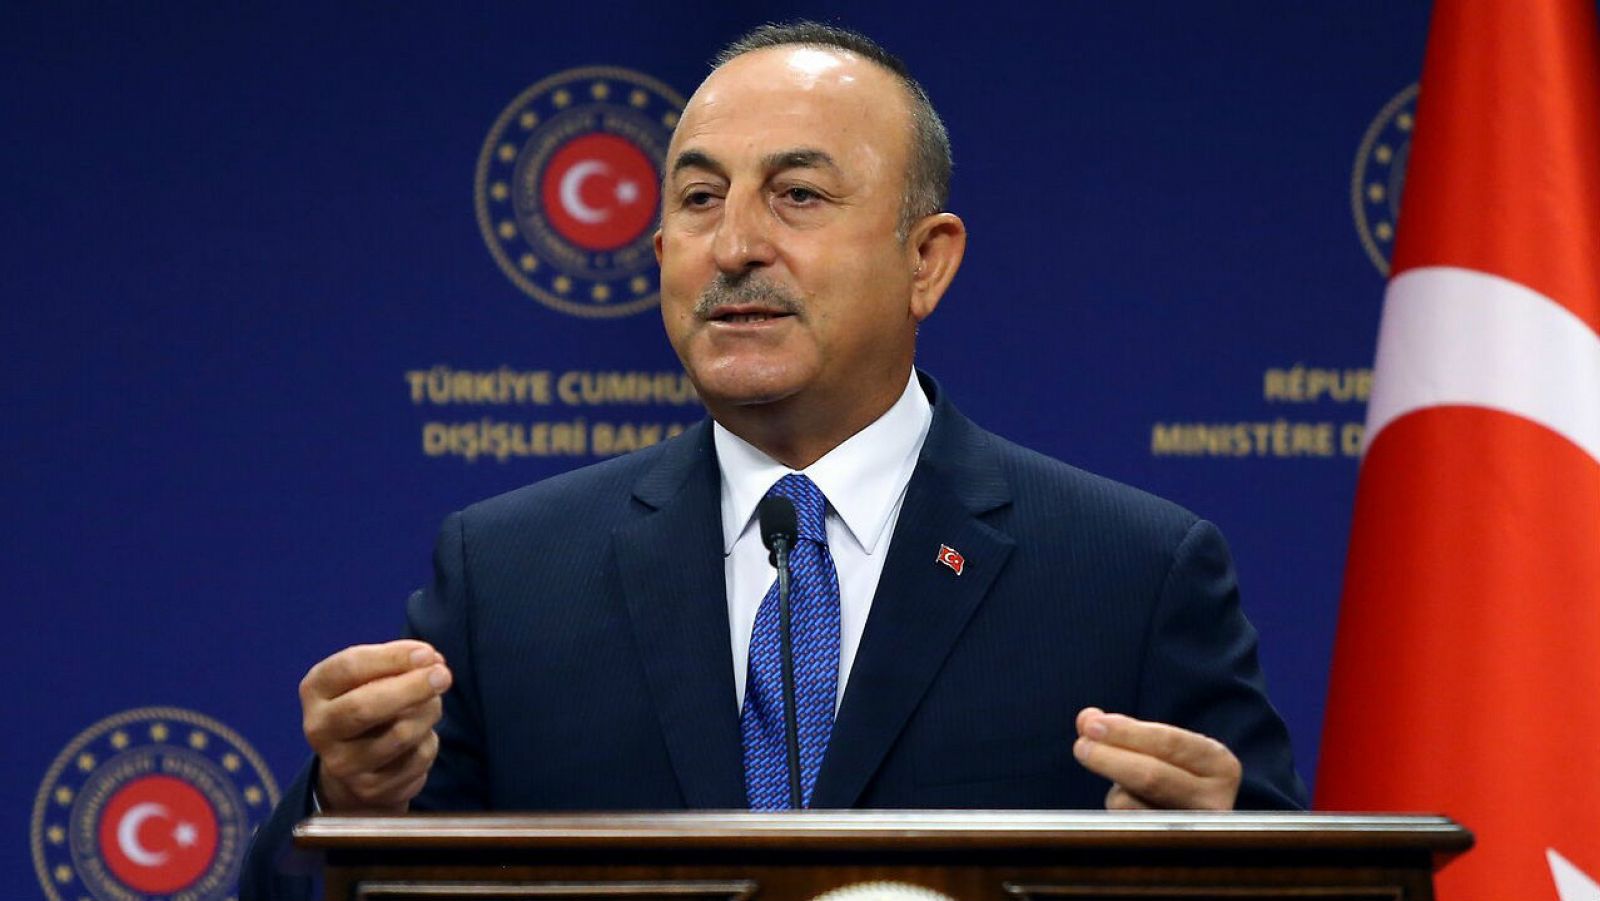 El ministro de Relaciones Exteriores de Turquía, Mevlut Cavusoglu, celebra una conferencia de prensa conjunta con el ministro de Relaciones Exteriores de Alemania después de su reunión en el Ministerio de Relaciones Exteriores de Turquía en Ankara.